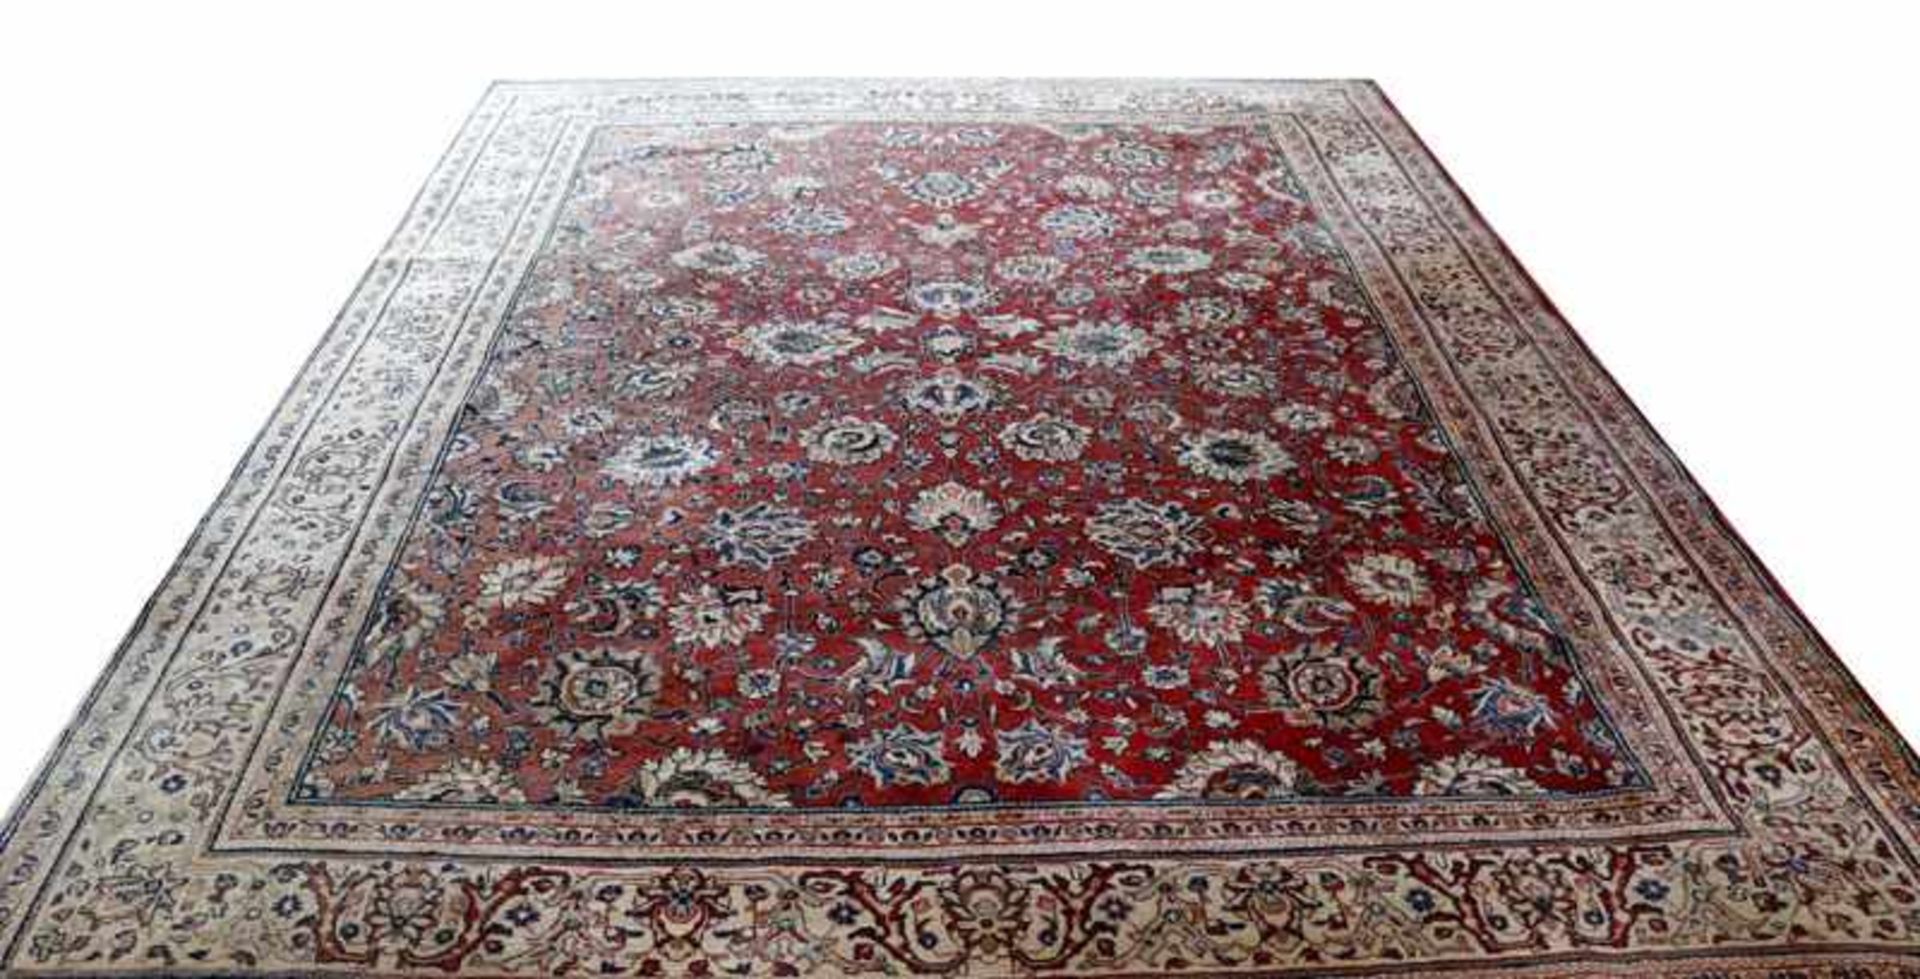 Teppich, rot/blau/beige, teils verblast, teils fleckig, Gebrauchsspuren, 350 cm x 260 cm